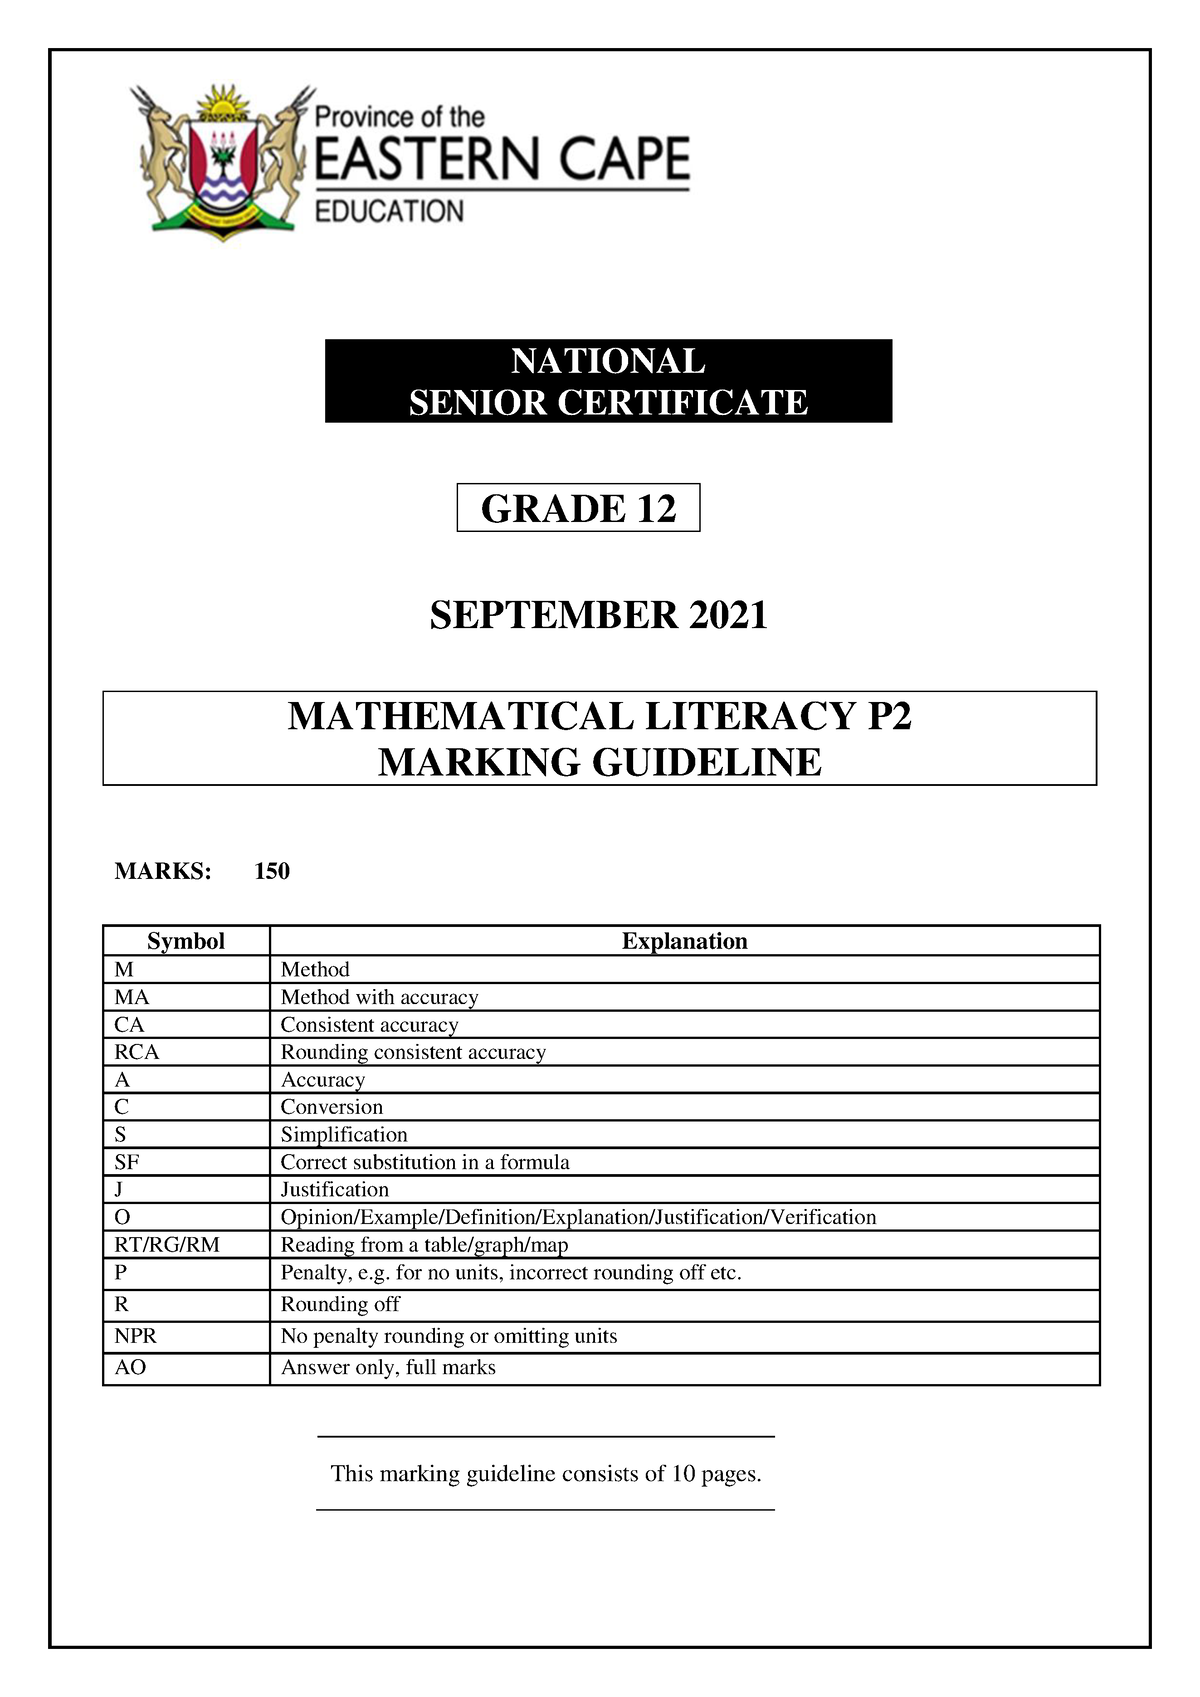 maths lit assignment grade 12 memo